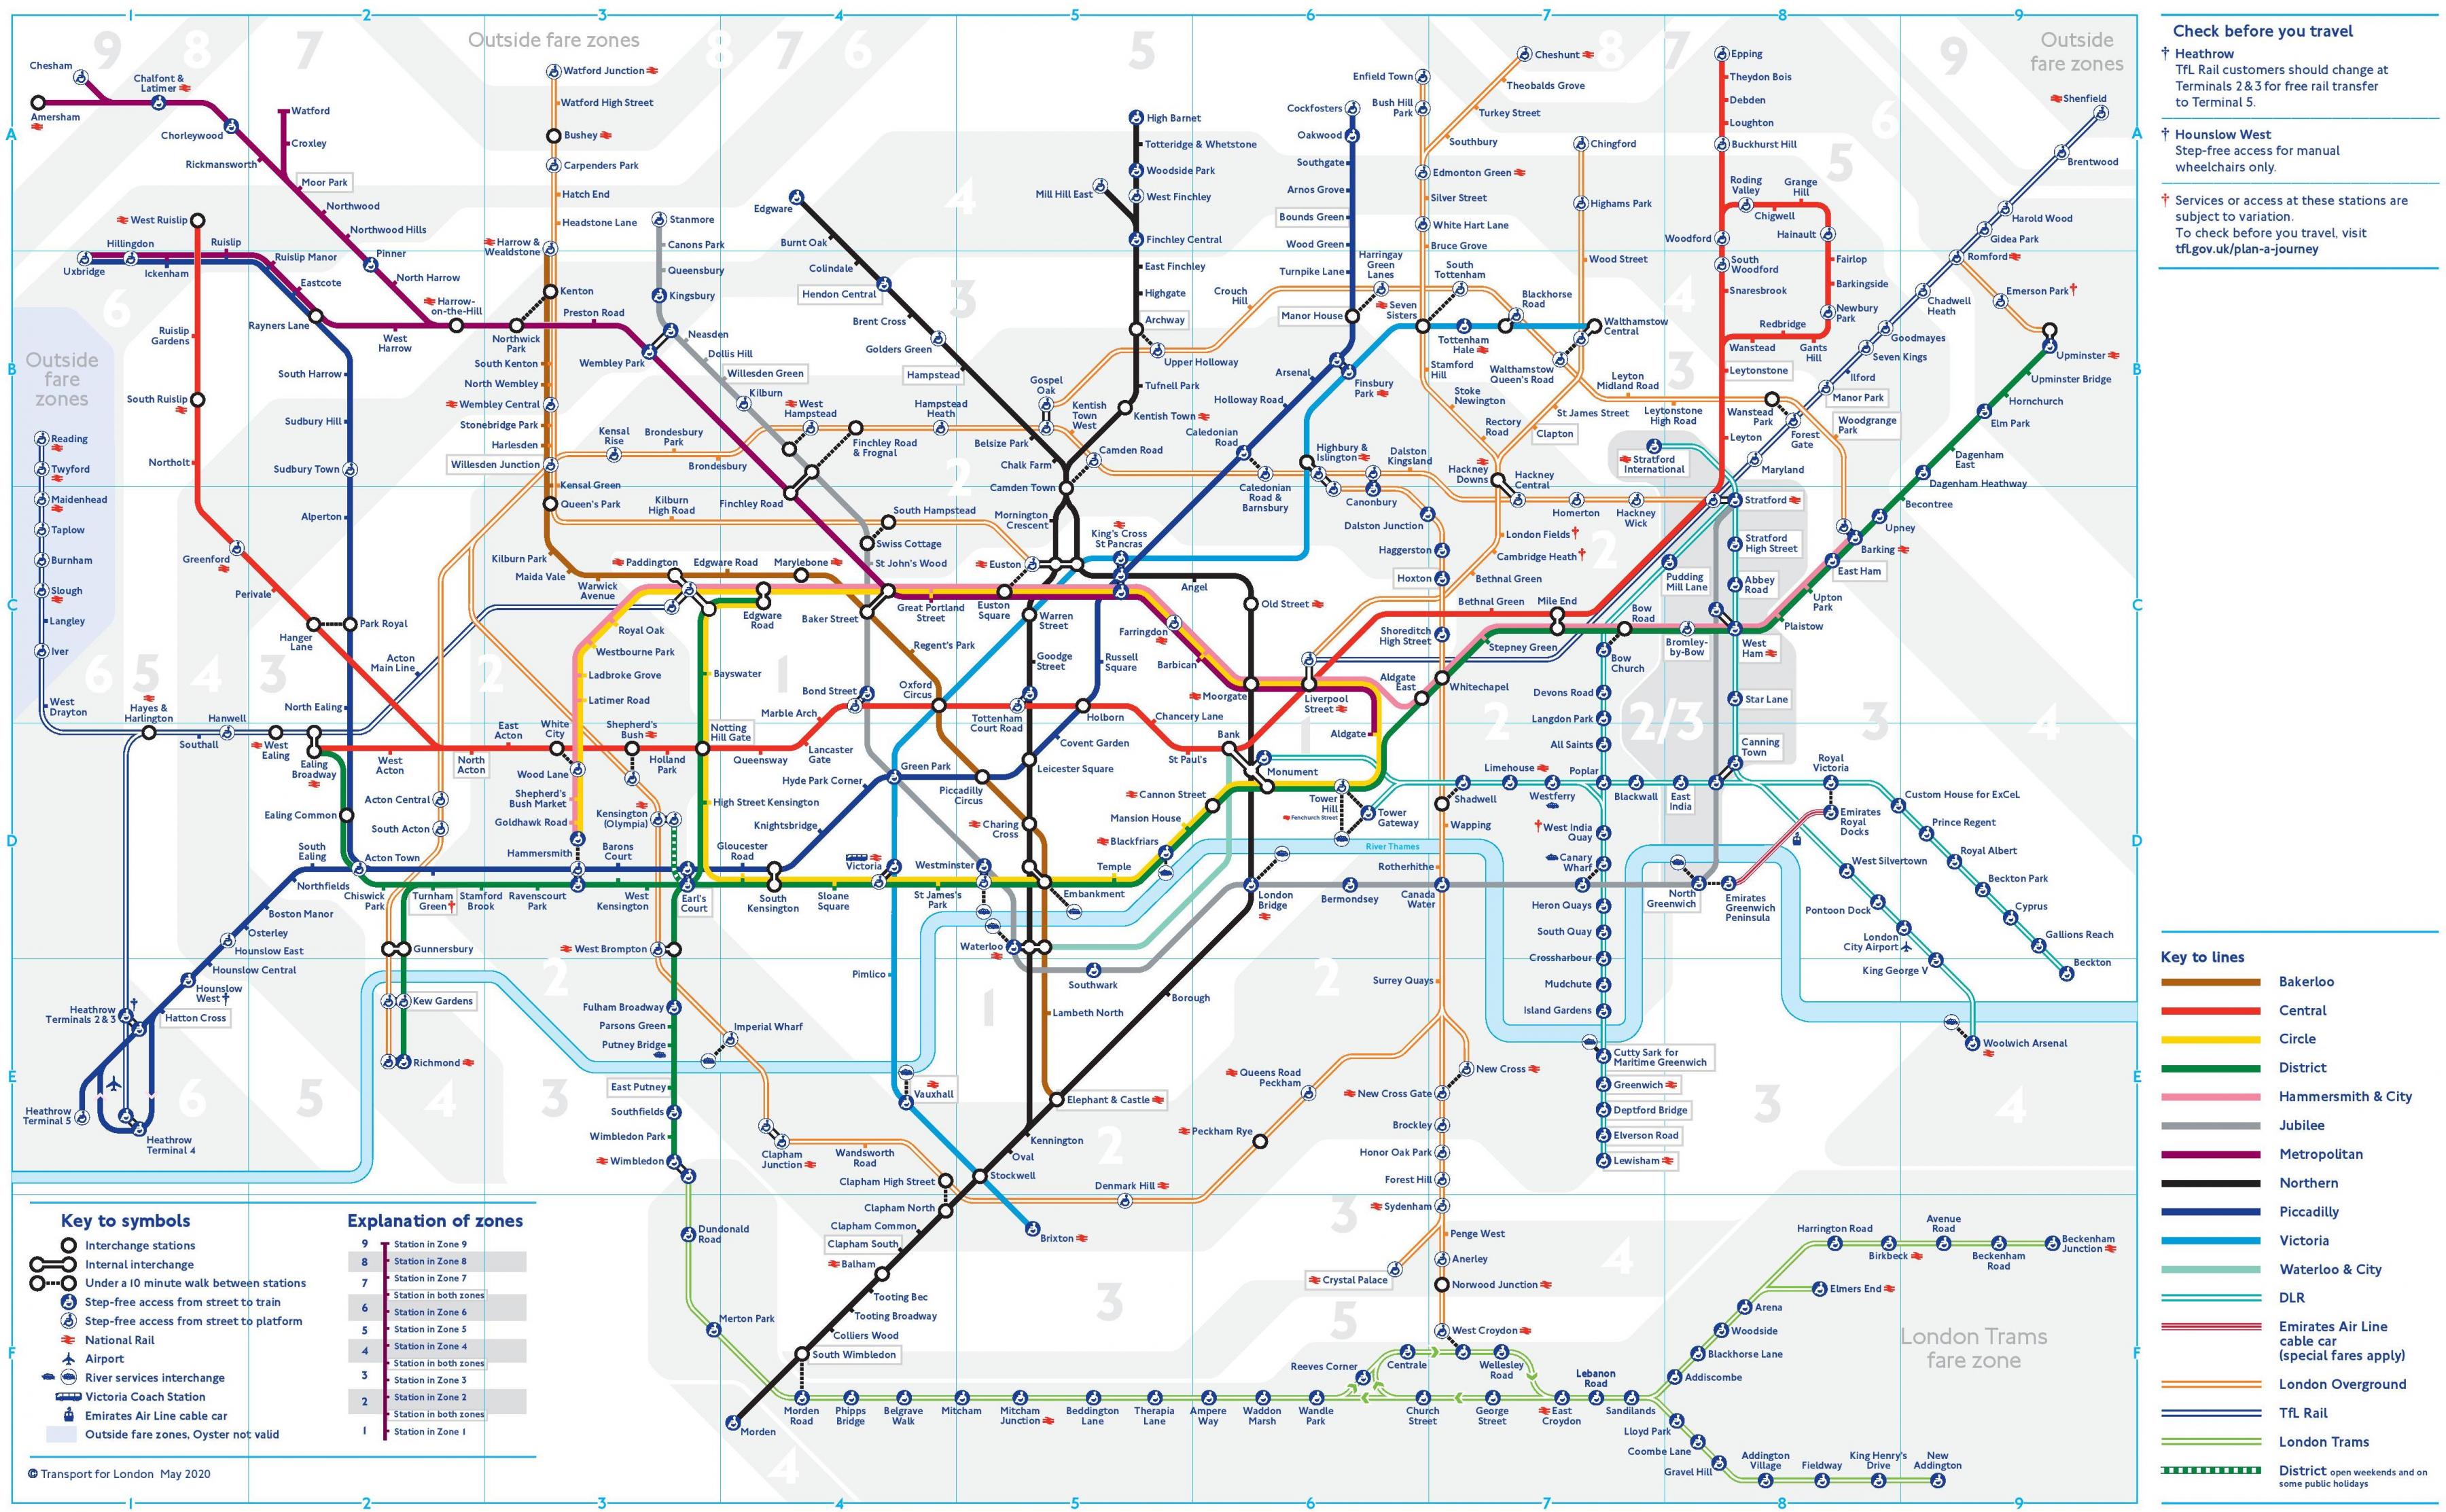 London underground map London underground tube map (England)